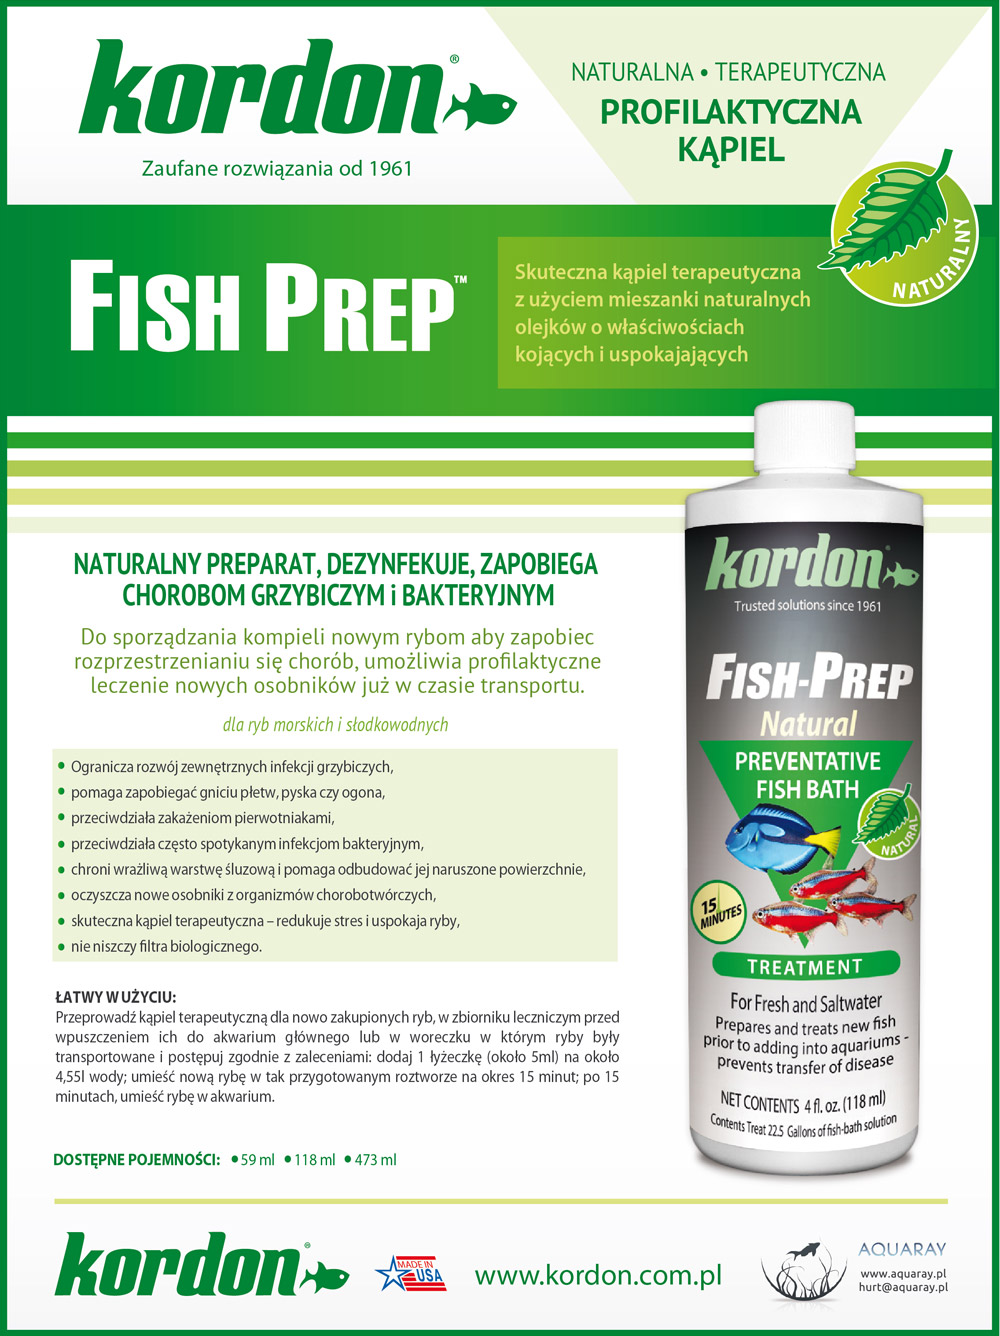 KORDON Fish Prep (32544) - Preparat leczniczy na infekcje grzybicze, pierwotniaki i inne choroby